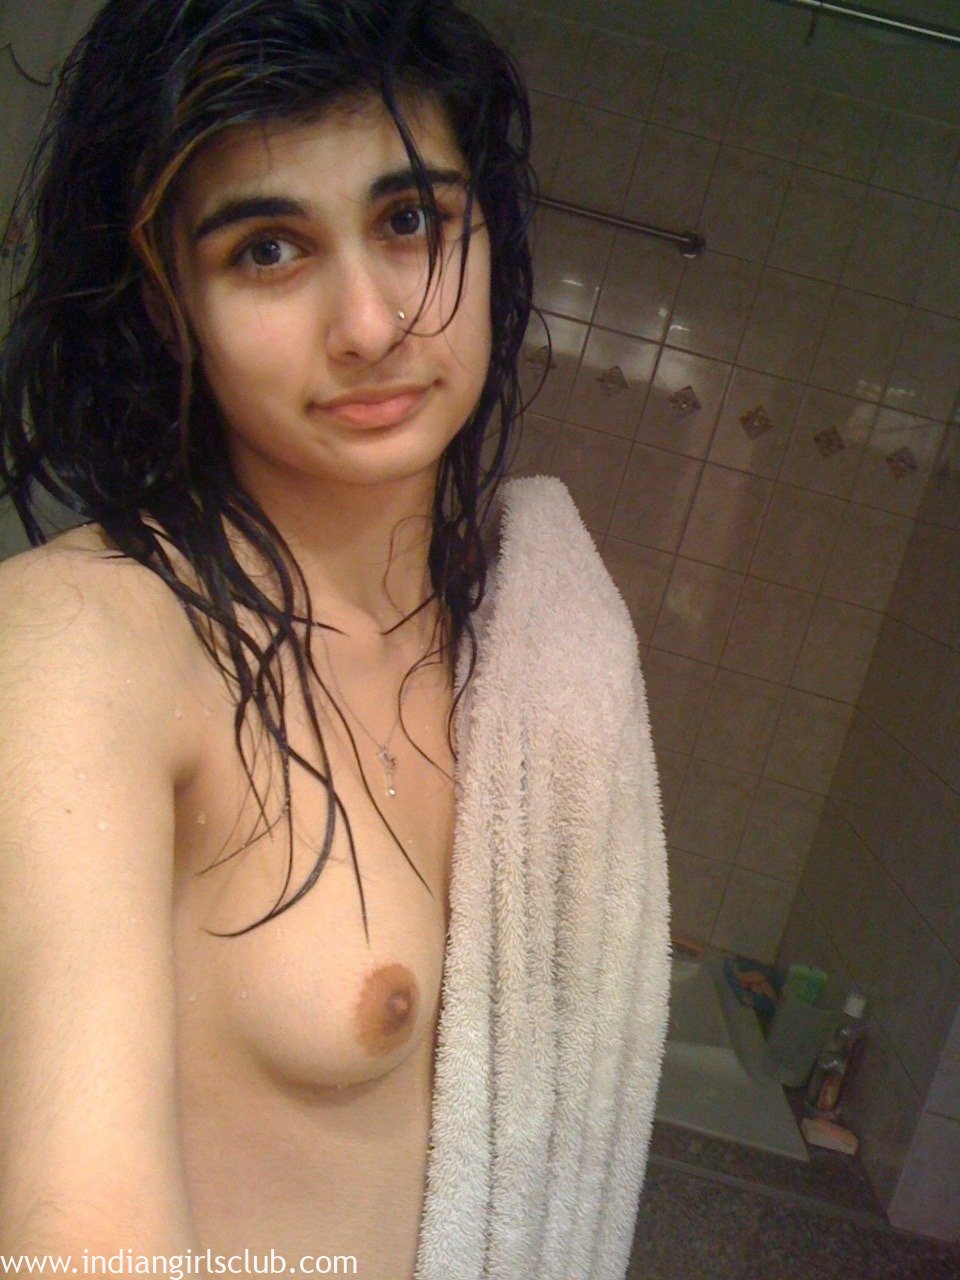 Sexy Beautiful Pakistani Girl Nude - Indian Girls Club